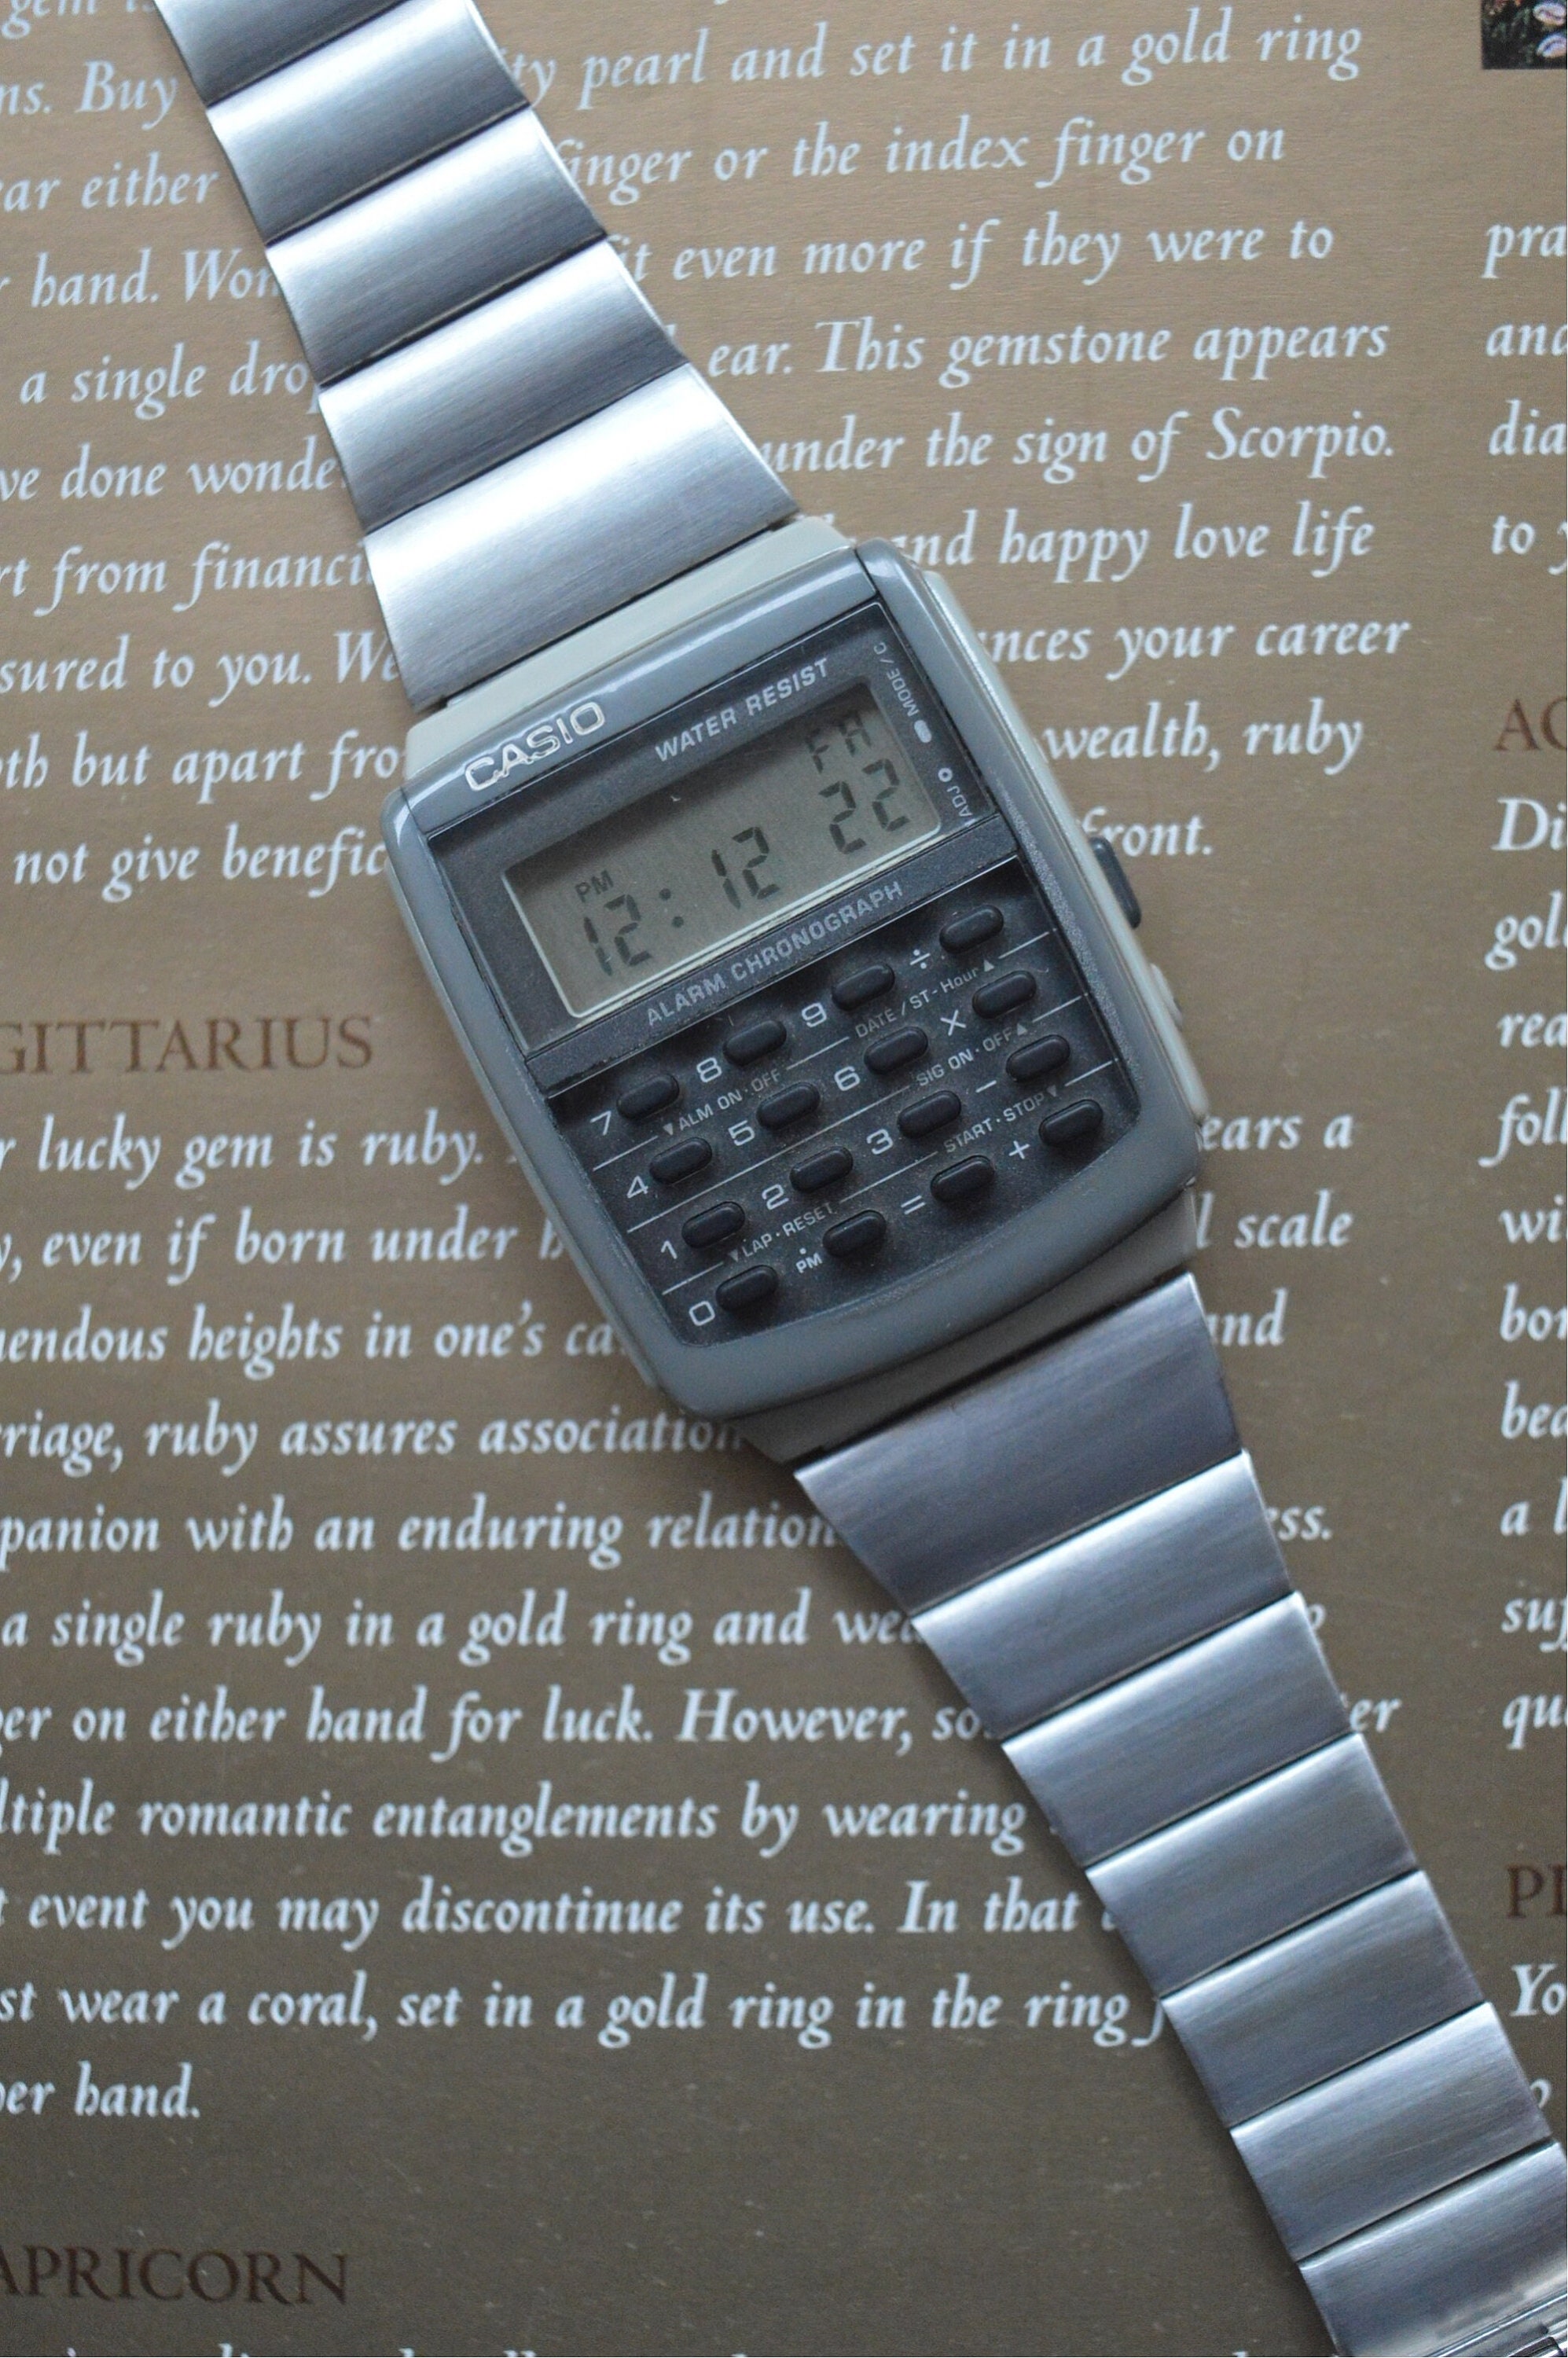 Reloj Casio con Calculadora, Hombre Ca-506C-5A